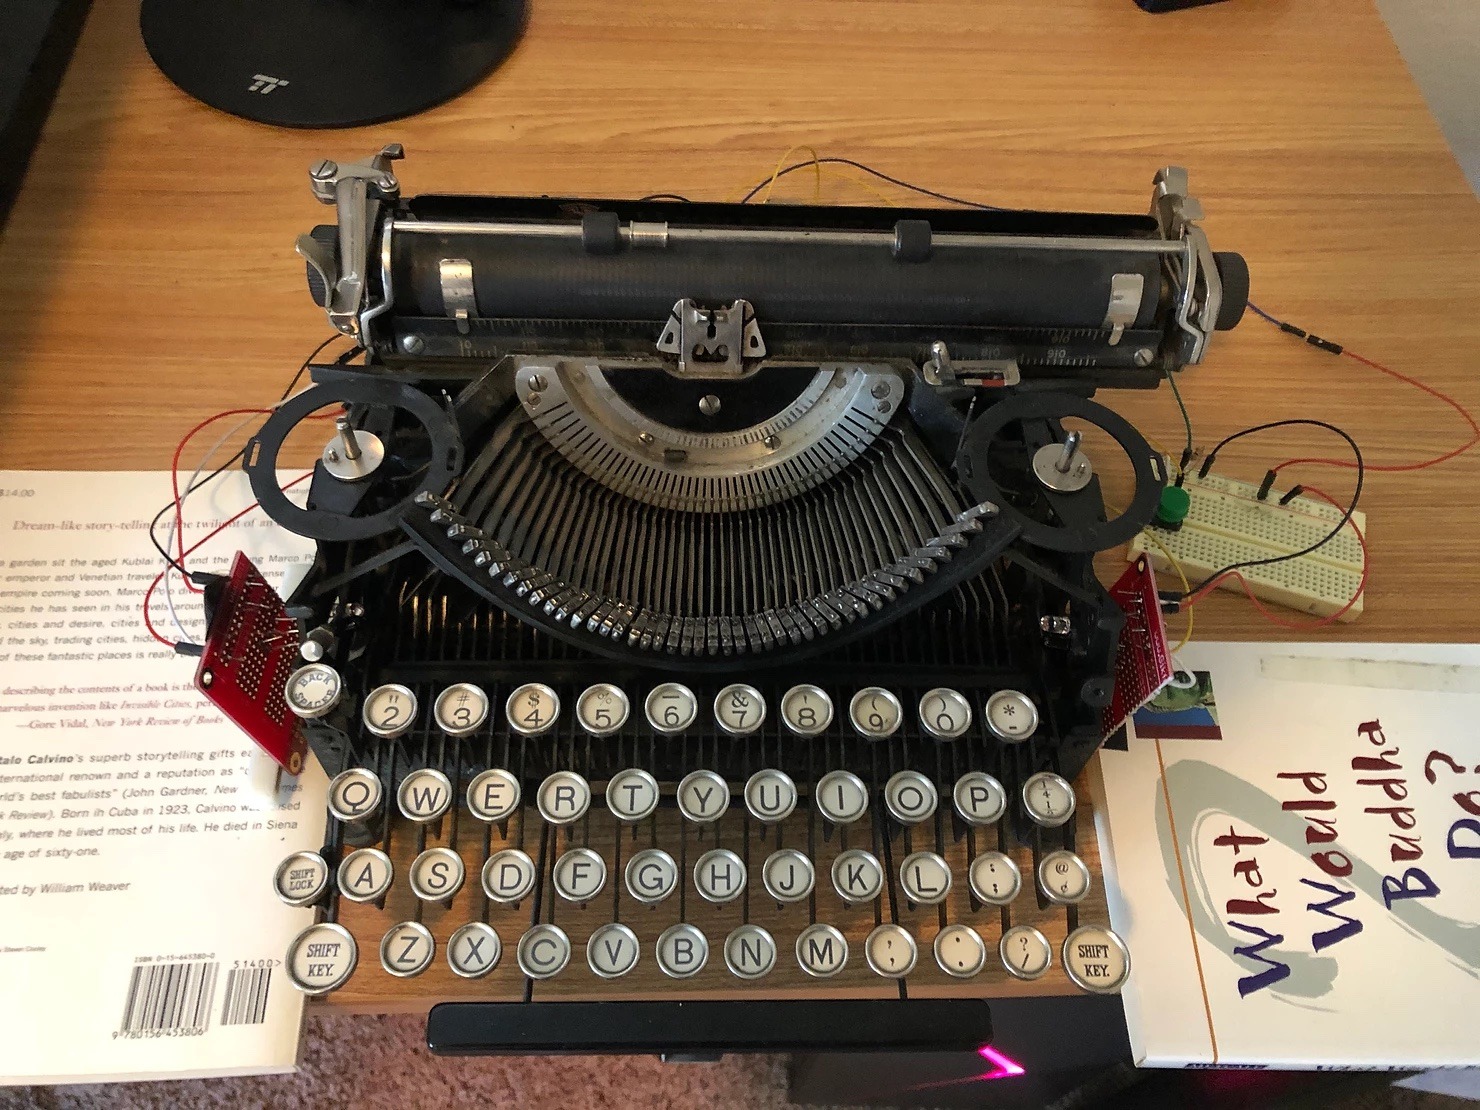 yui typewriter keyboard